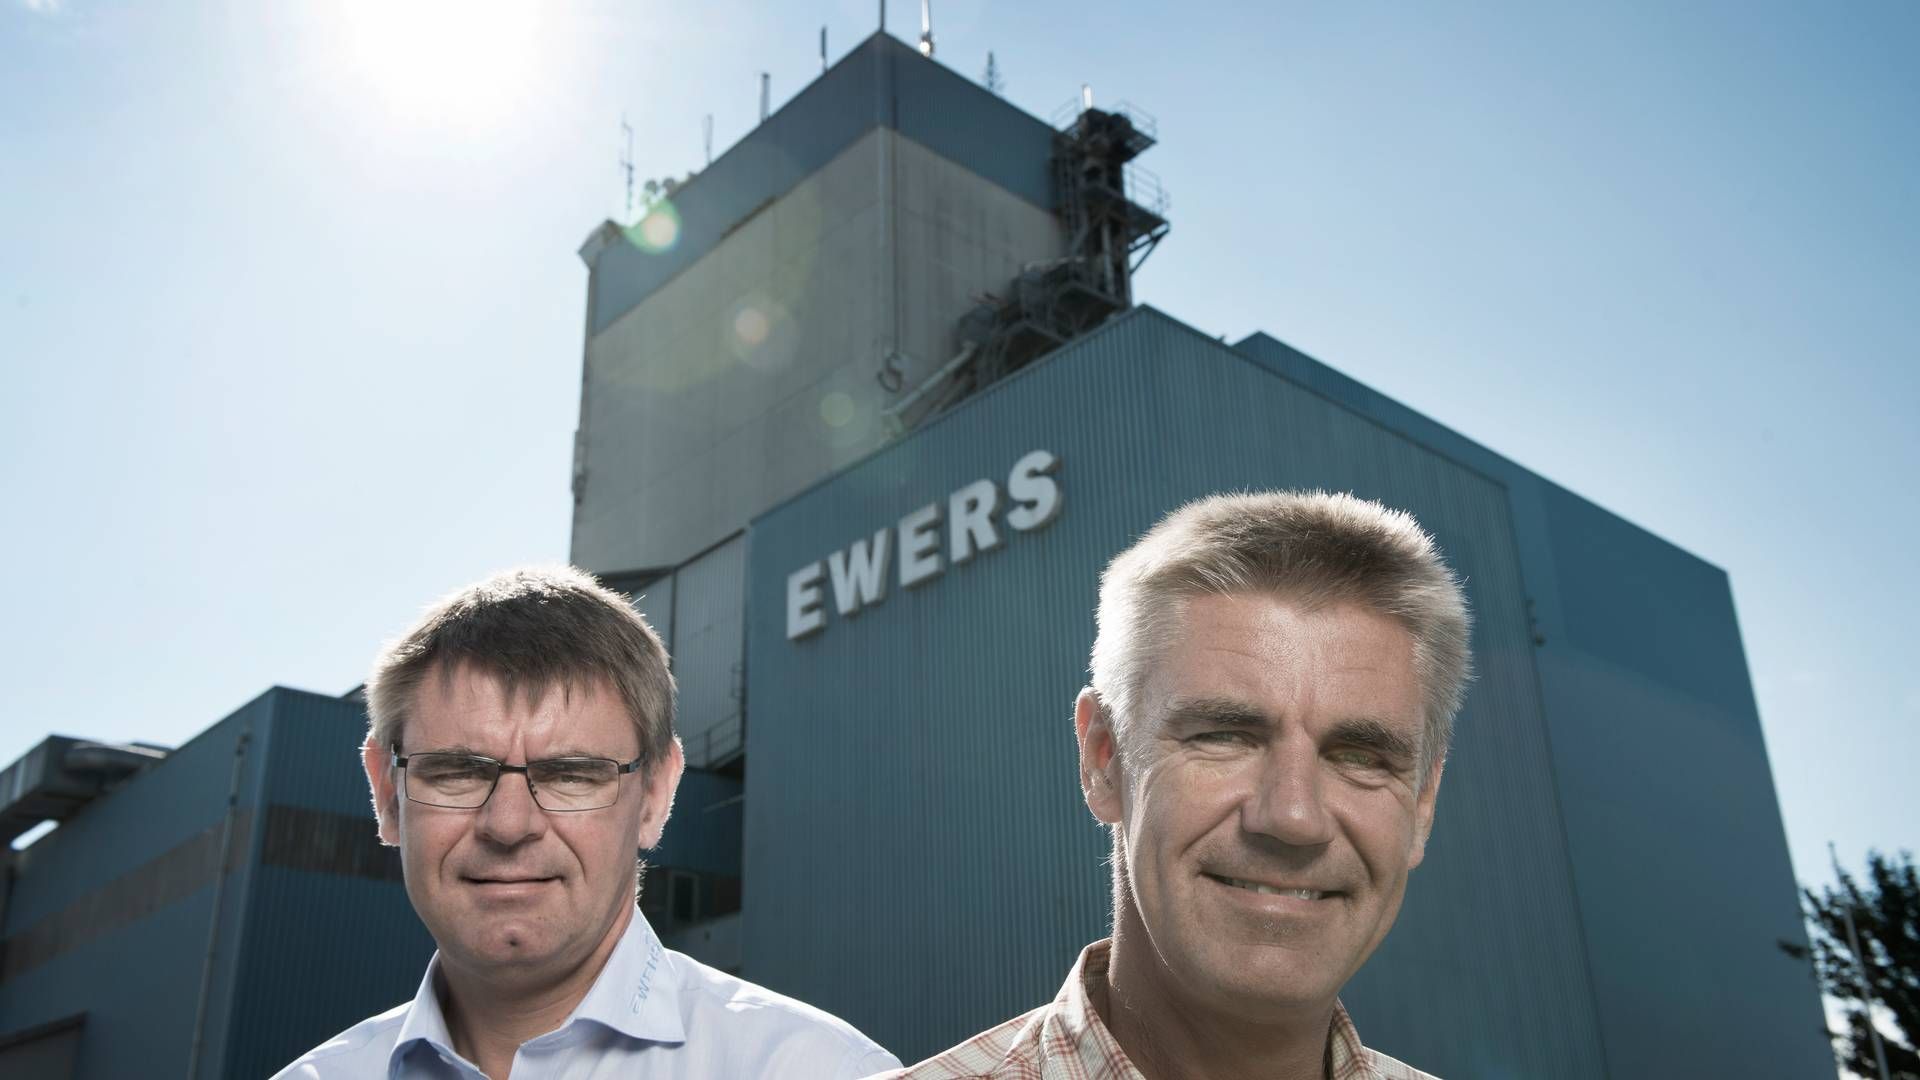 Hans Otto og Claus Ewers er 6. generation i grovvareselskabet Brdr. Ewers | Foto: Joachim Ladefoged